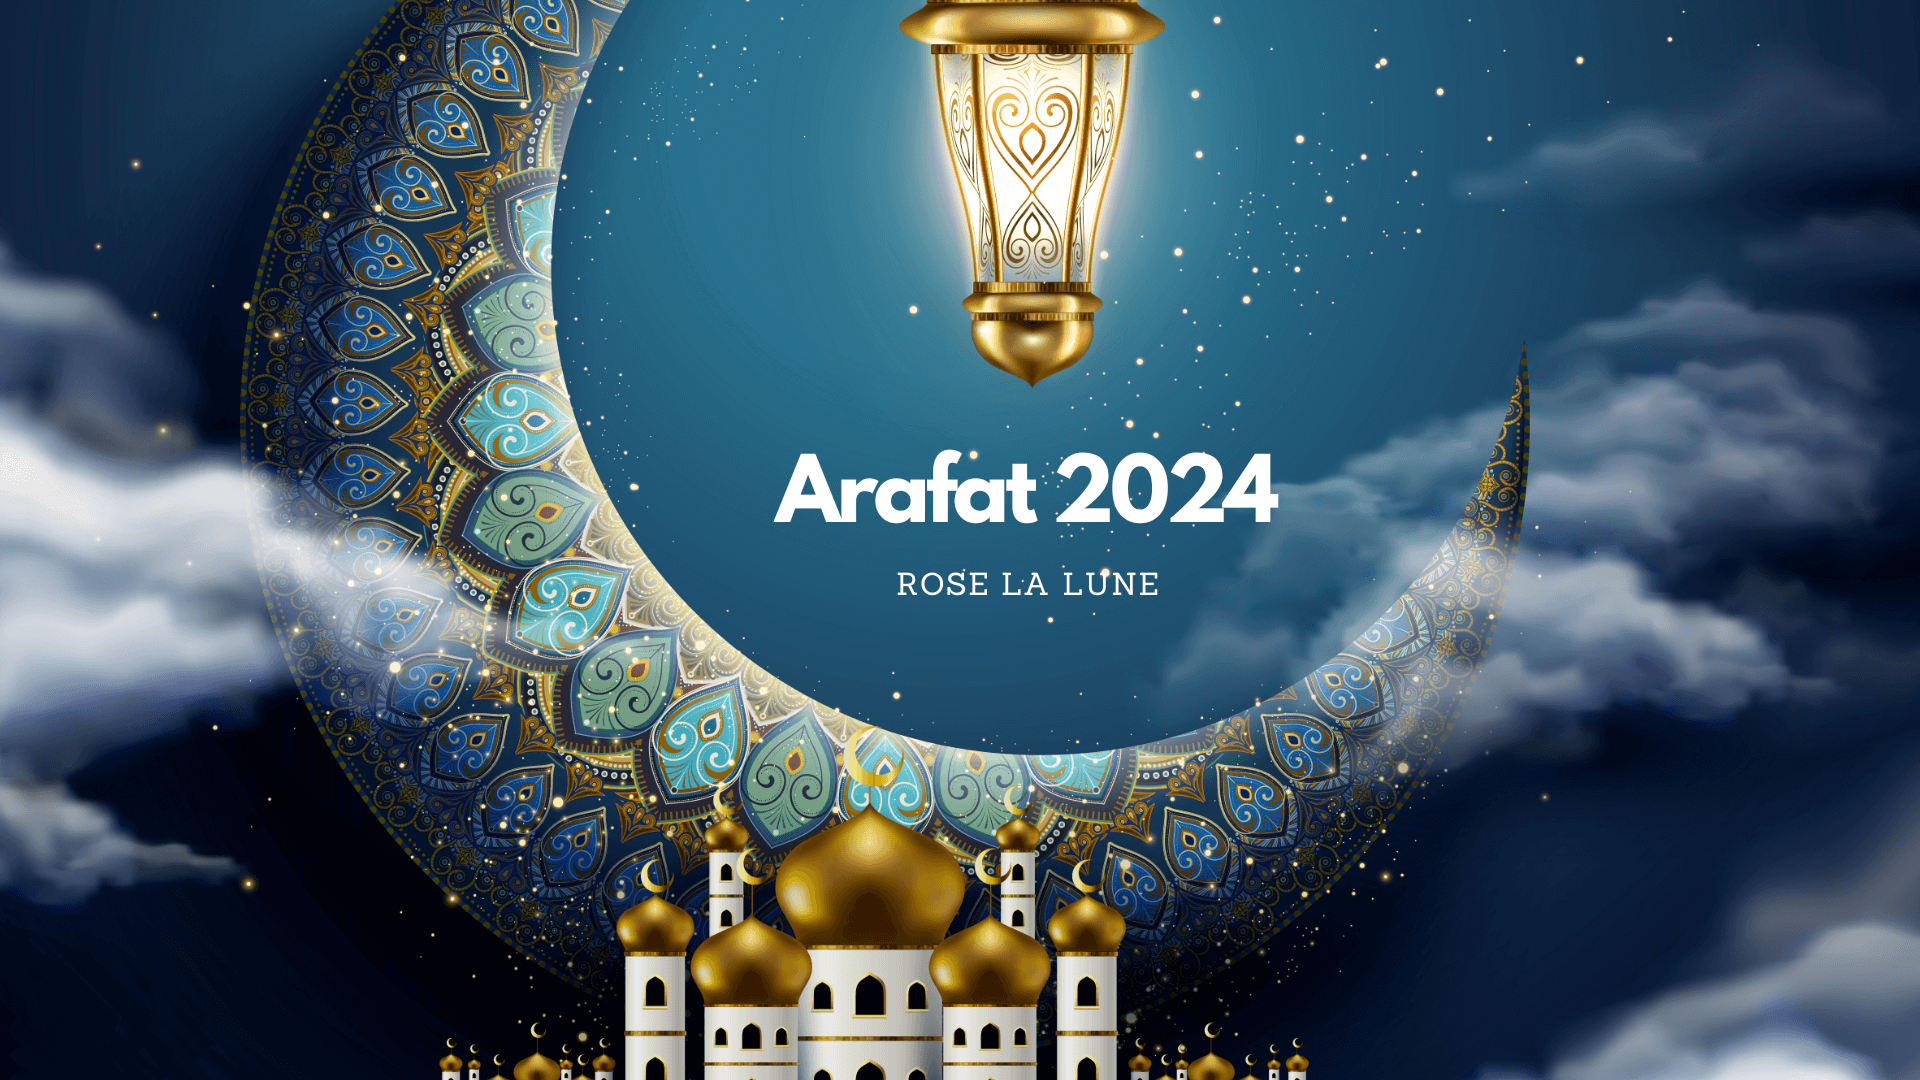 Arafat 2024 date et rôle de la Lune Rose La Lune